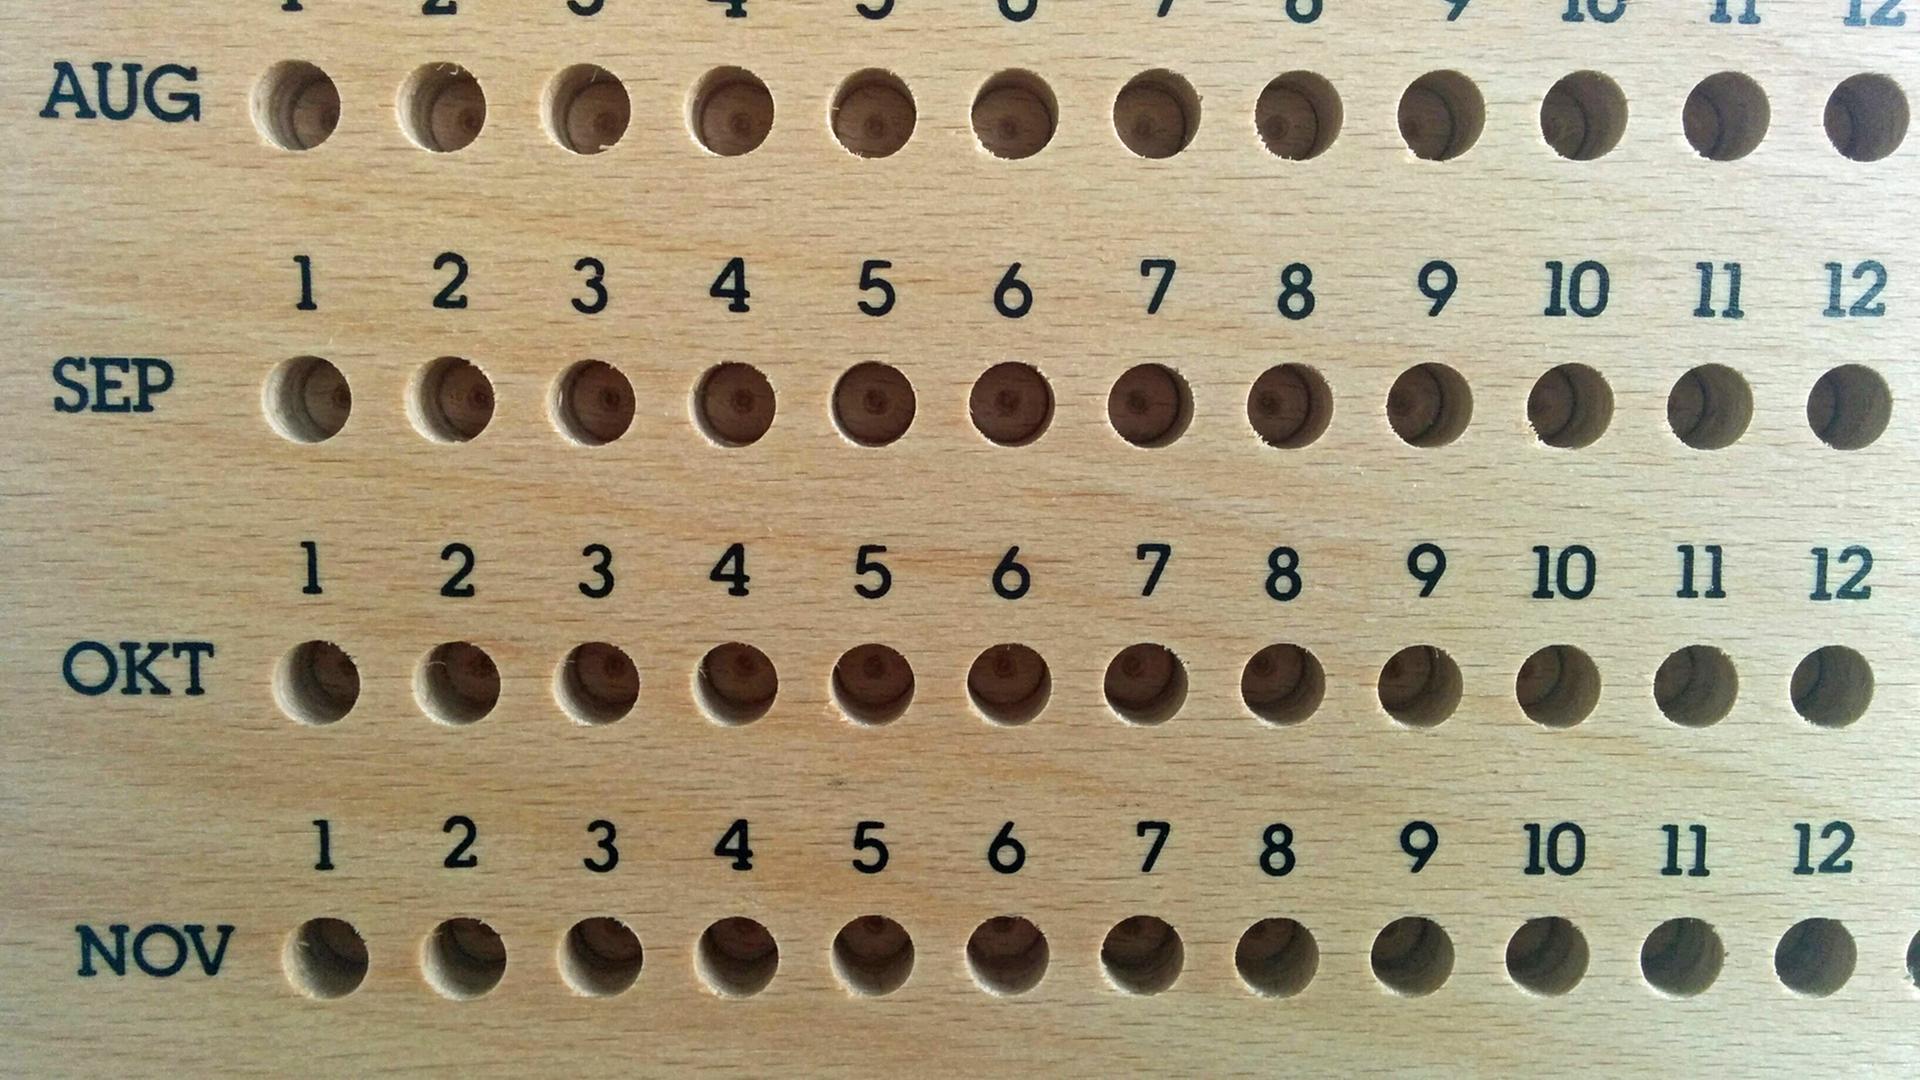 Ein ewiger Kalender aus Holz, zu sehen sind die Monate August, September, Oktober und November